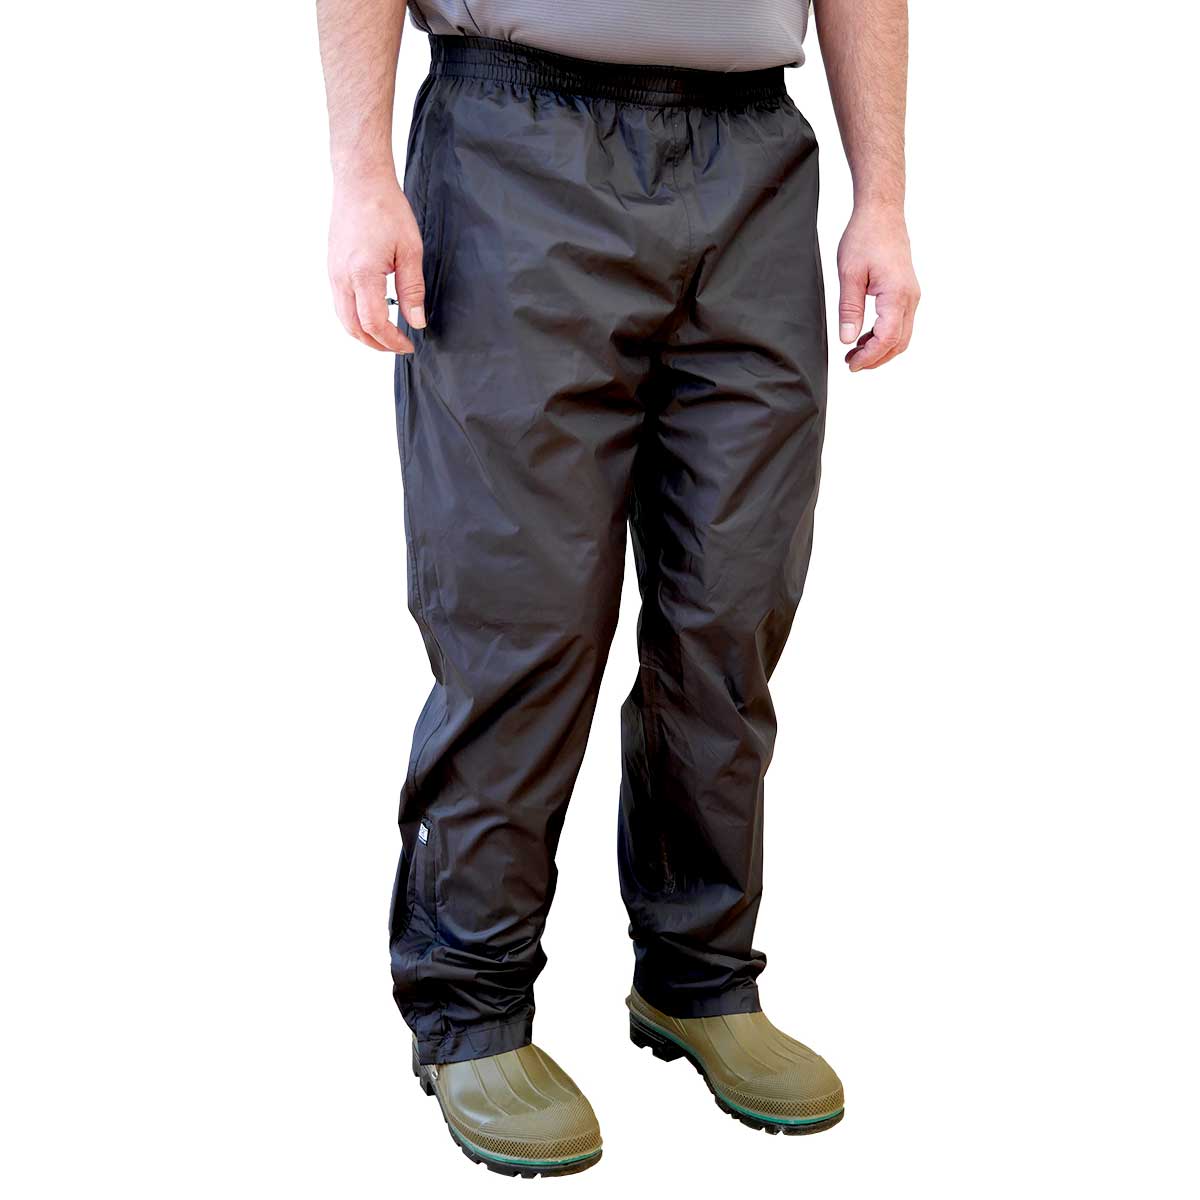 Men's Sugar River Waterproof Pants, XXL, Black by Gemplers